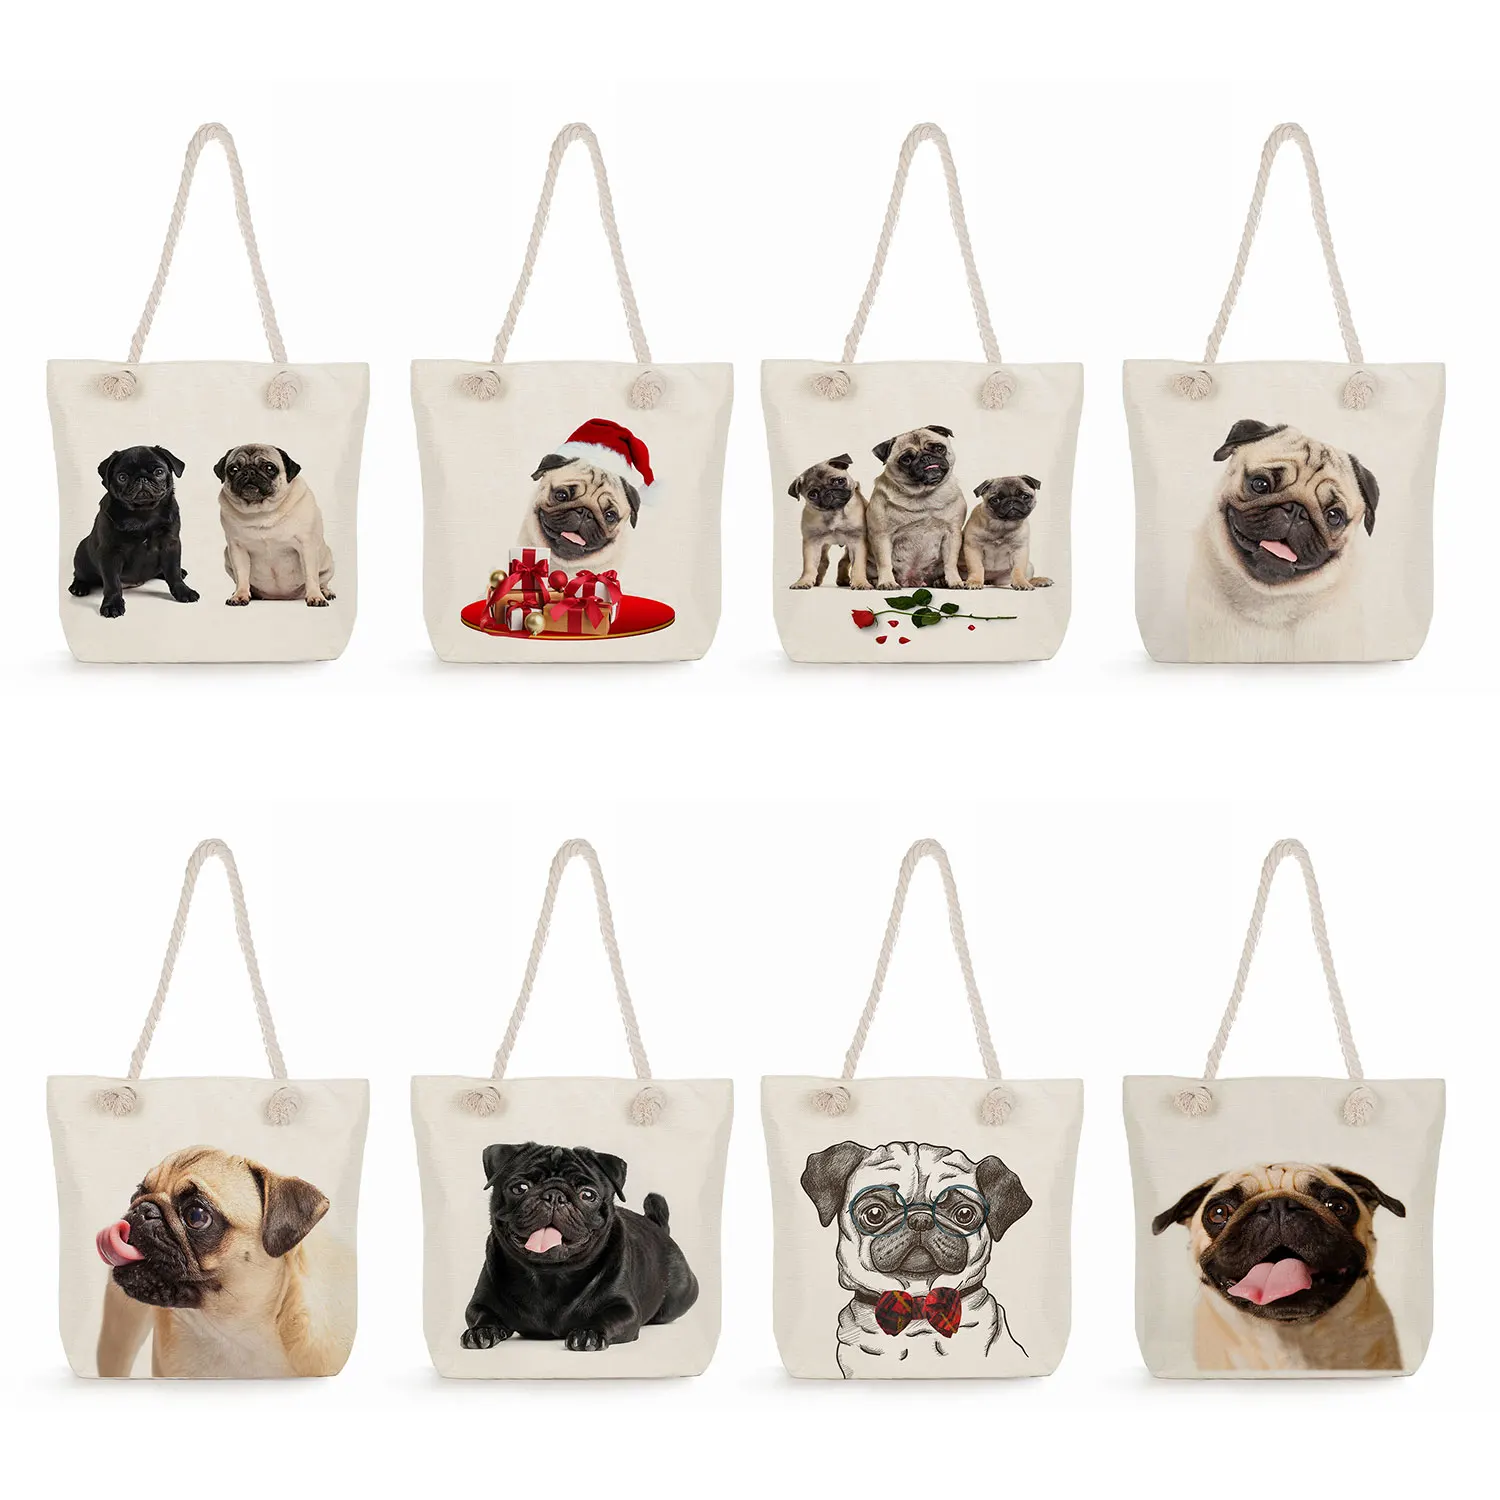 

Pug Dog Print Shopping Bag Animal Graphic Grocery Tote Bags Eco Reusable Storage Handbags Polyester Fabric Shoulder Bag